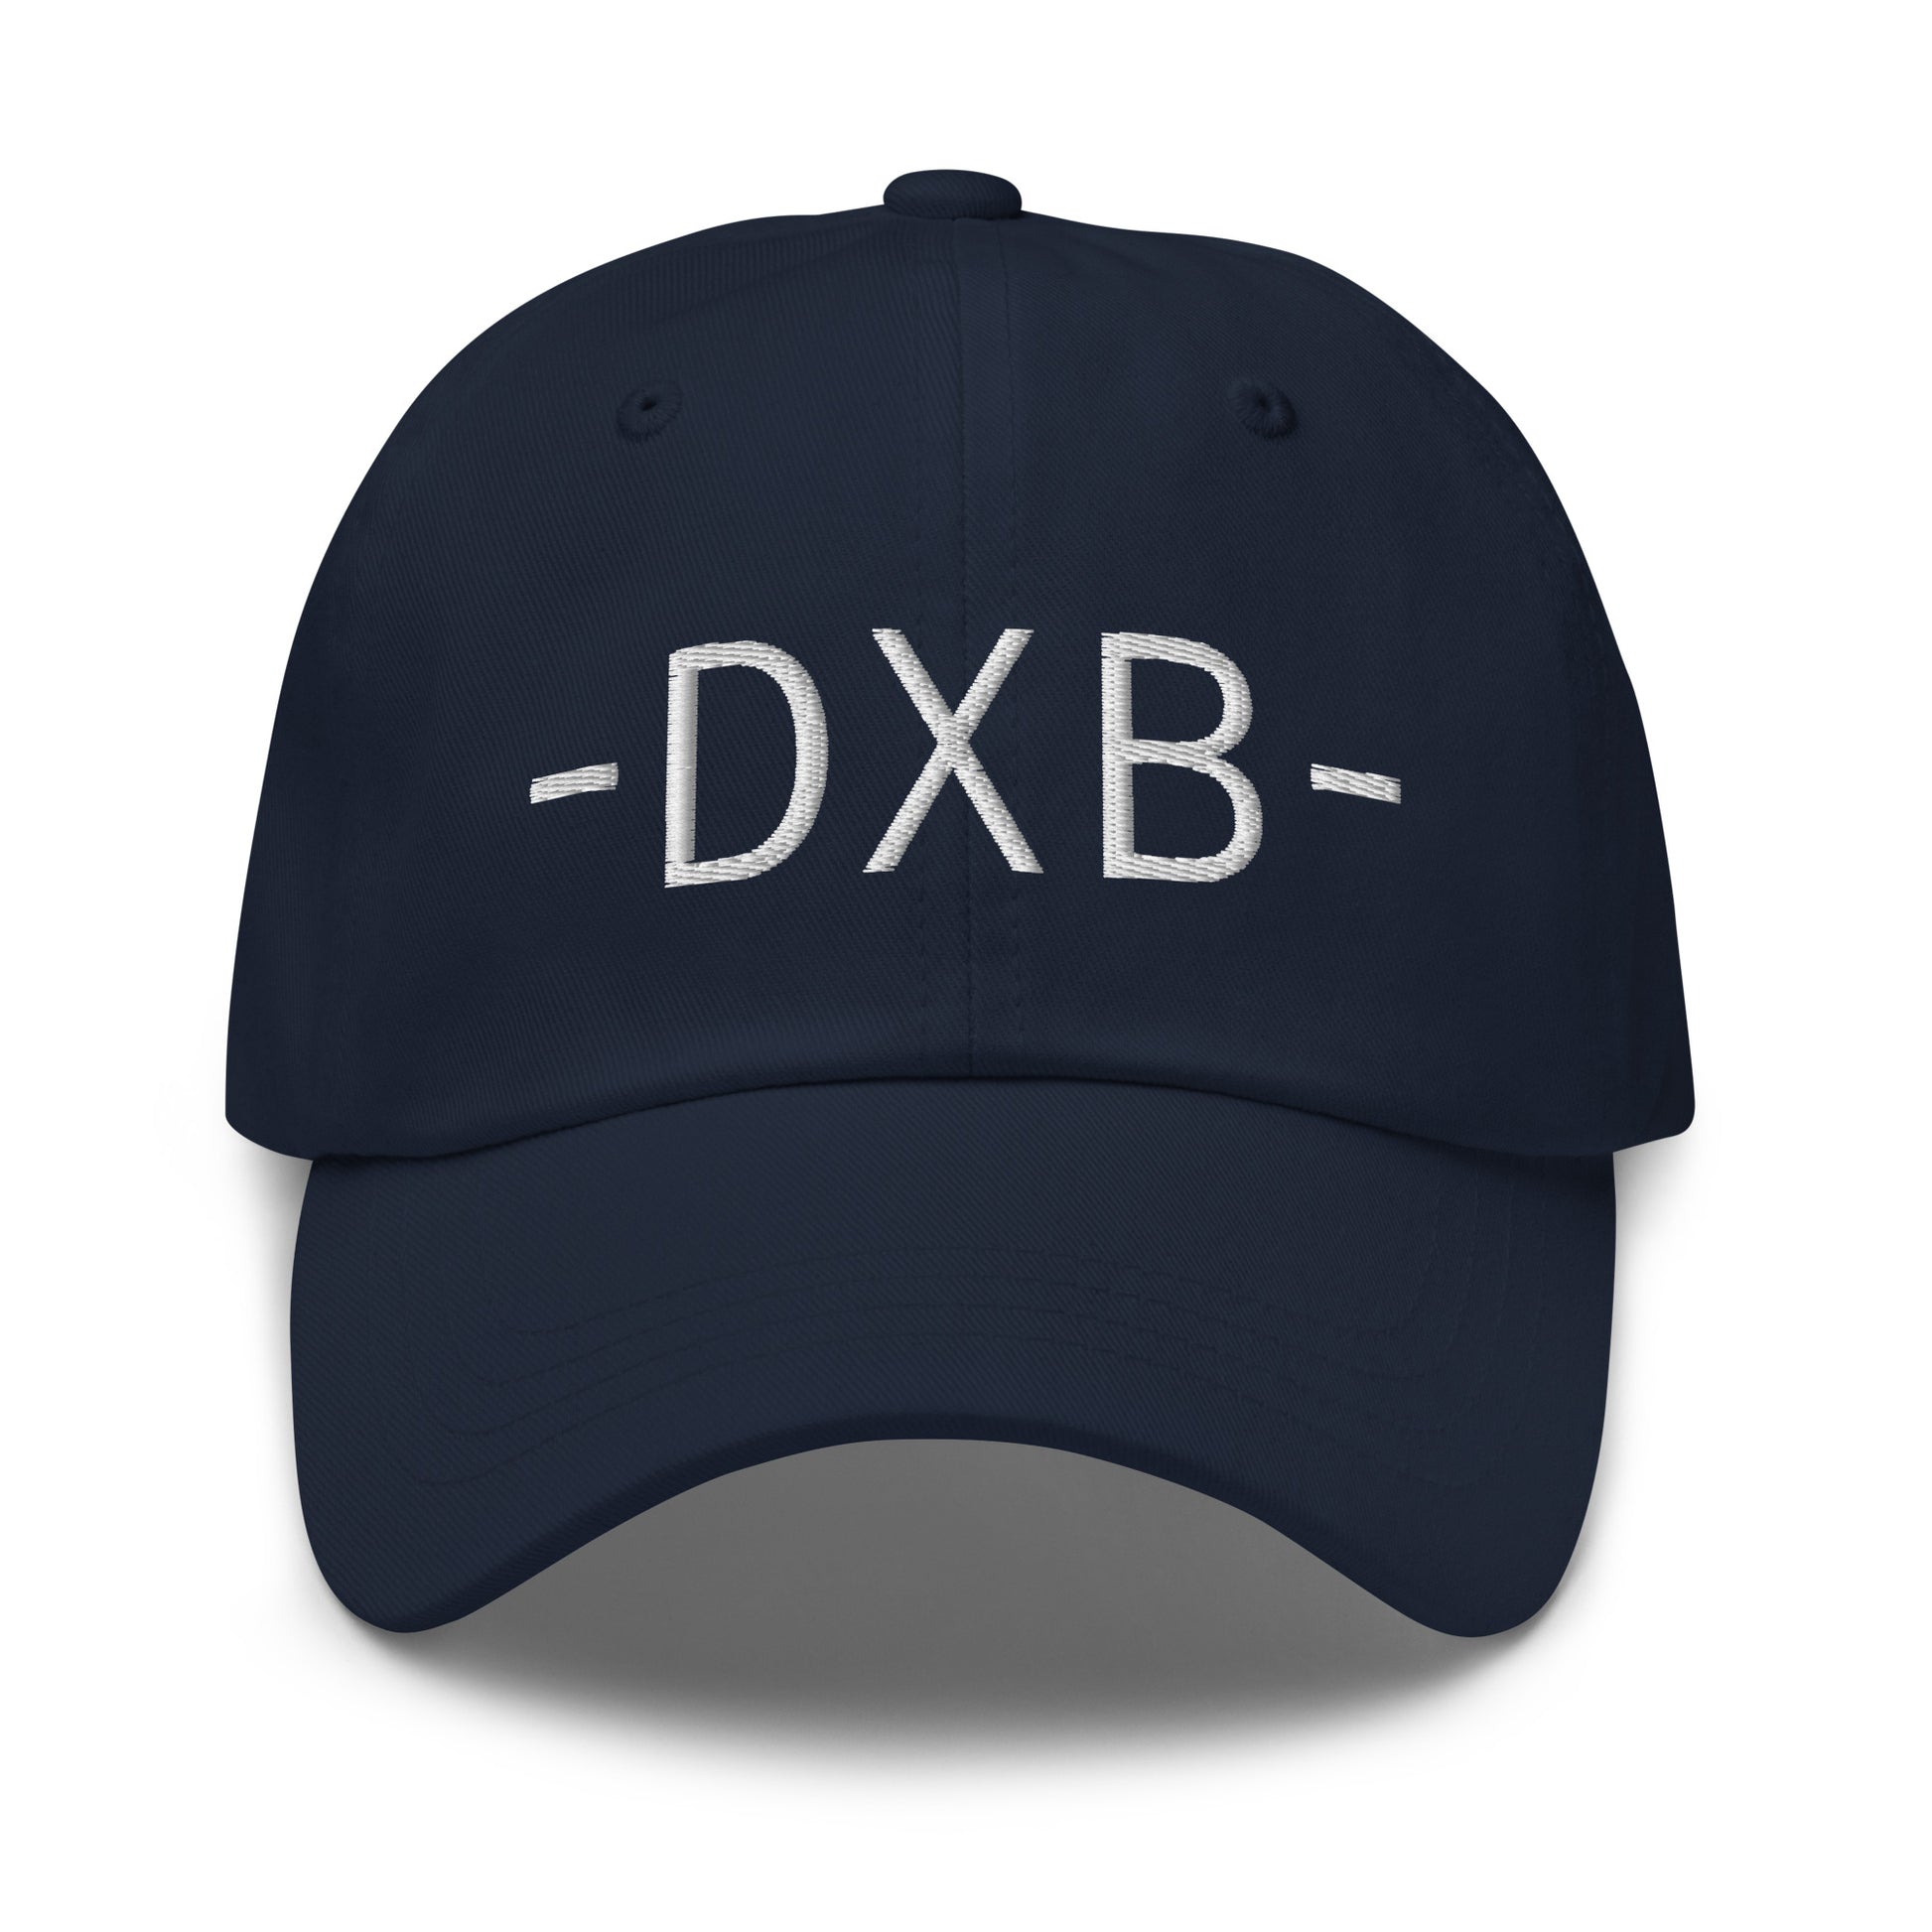 Souvenir Baseball Cap - White • DXB Dubai • YHM Designs - Image 14